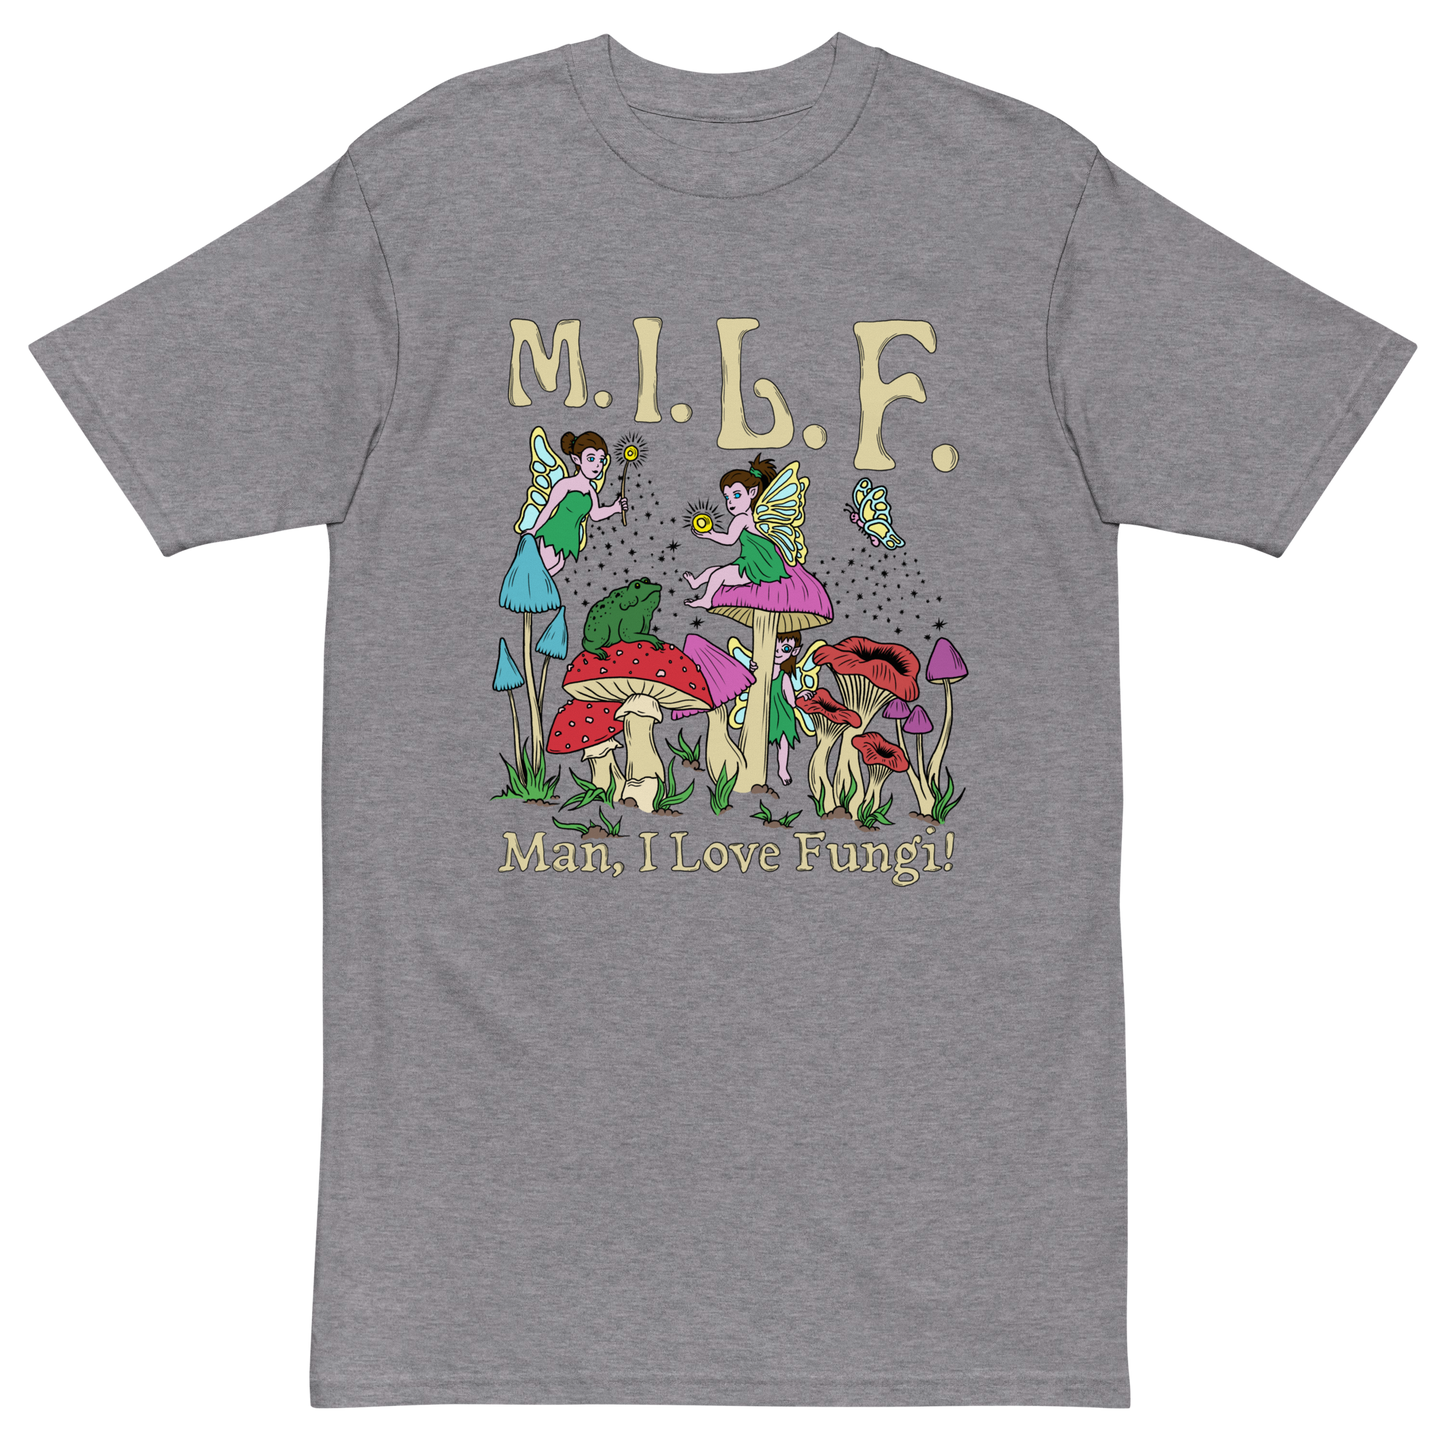 M.I.L.F Premium Graphic Tee